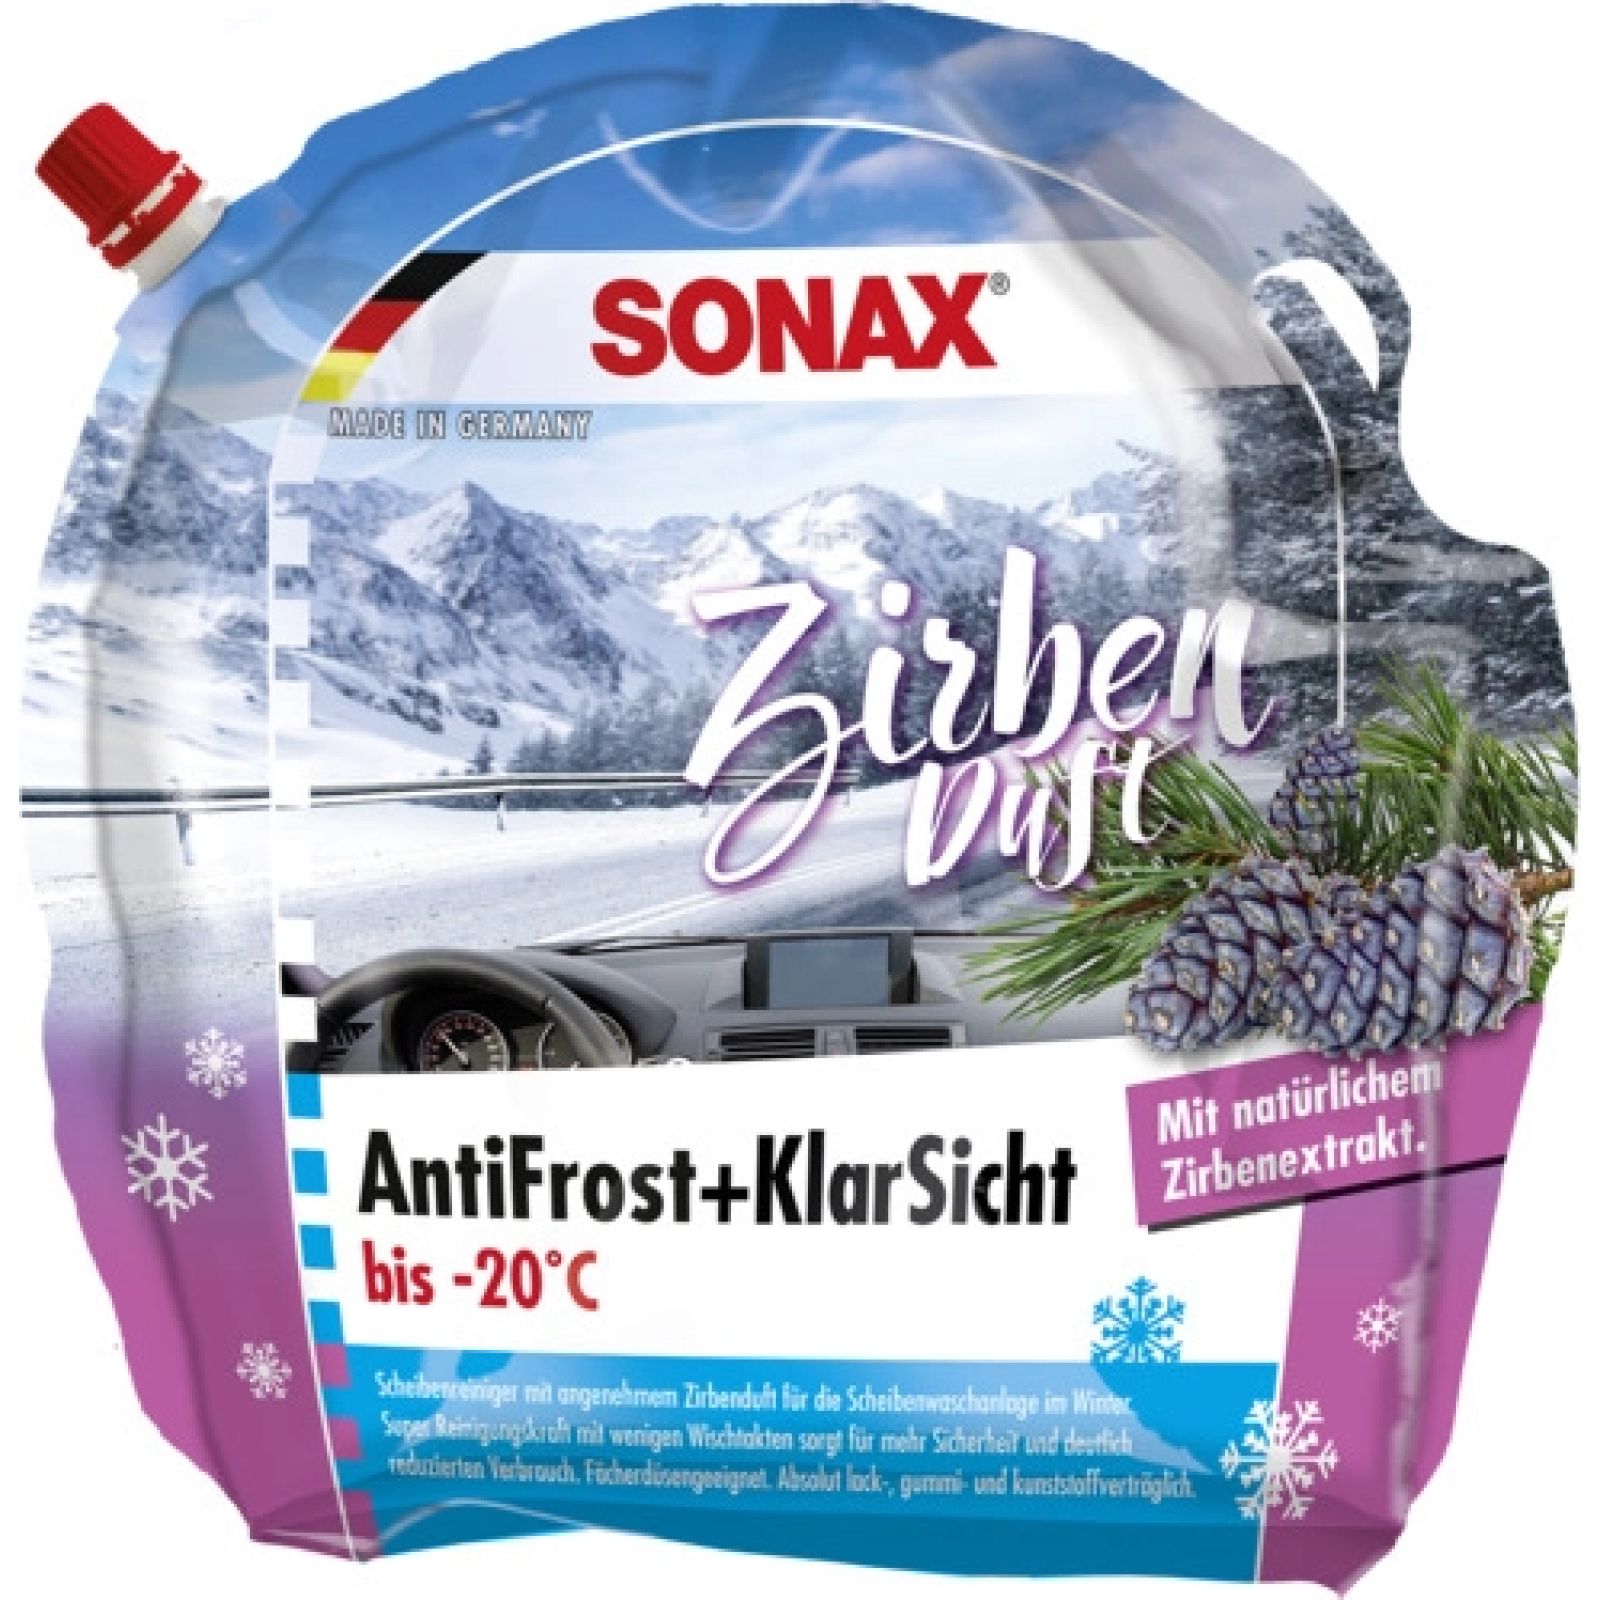 SONAX, Frostschutz, Scheibenreinigungsanlage, Antifrost&KlarSicht bis  -20°C Zirbe, AntiFrost+KlarSicht